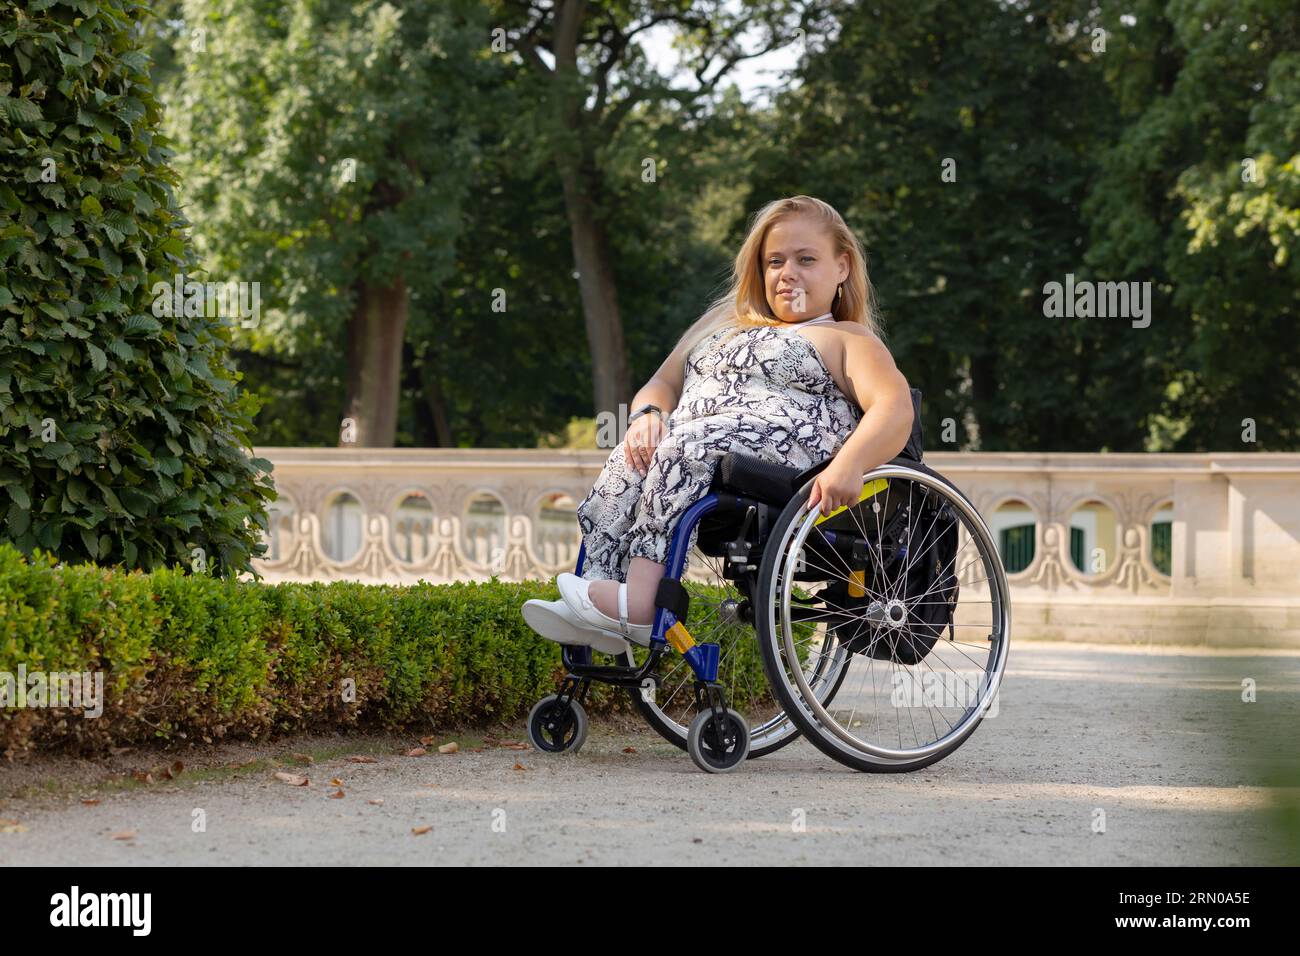 Full Length Young Pretty Woman avec petite stature sur fauteuil roulant regardant la caméra dans le parc public le jour d'été. Sourire Pretty Female adulte avec Banque D'Images